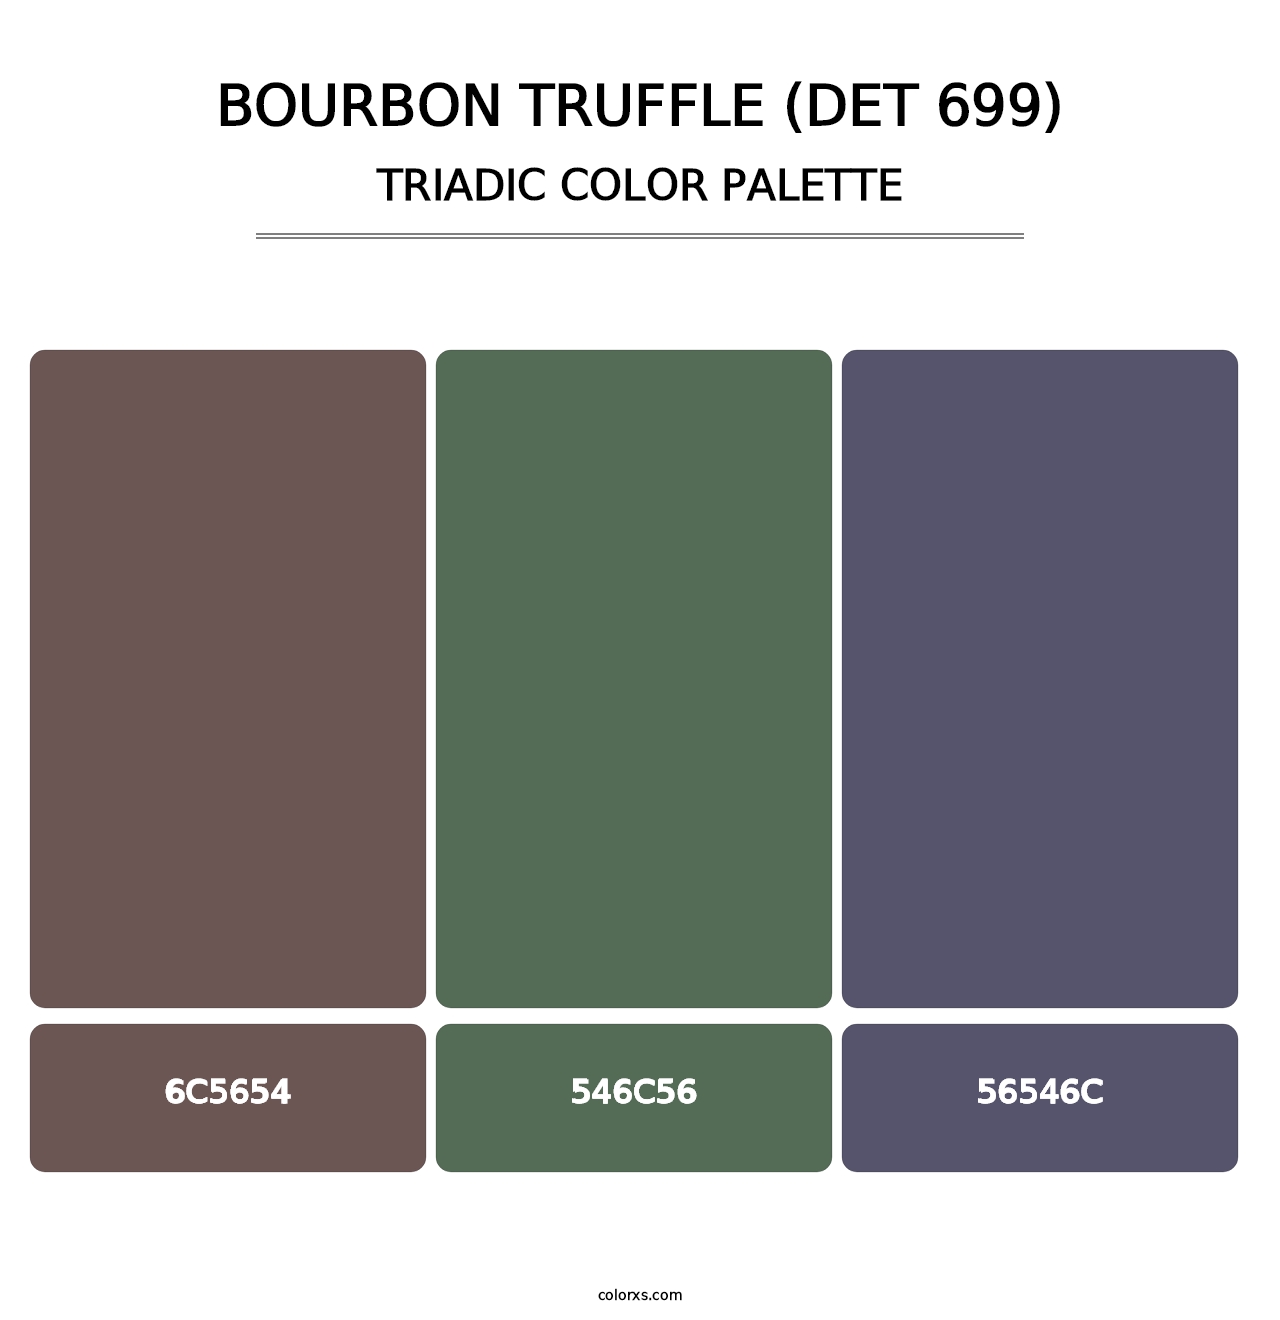 Bourbon Truffle (DET 699) - Triadic Color Palette